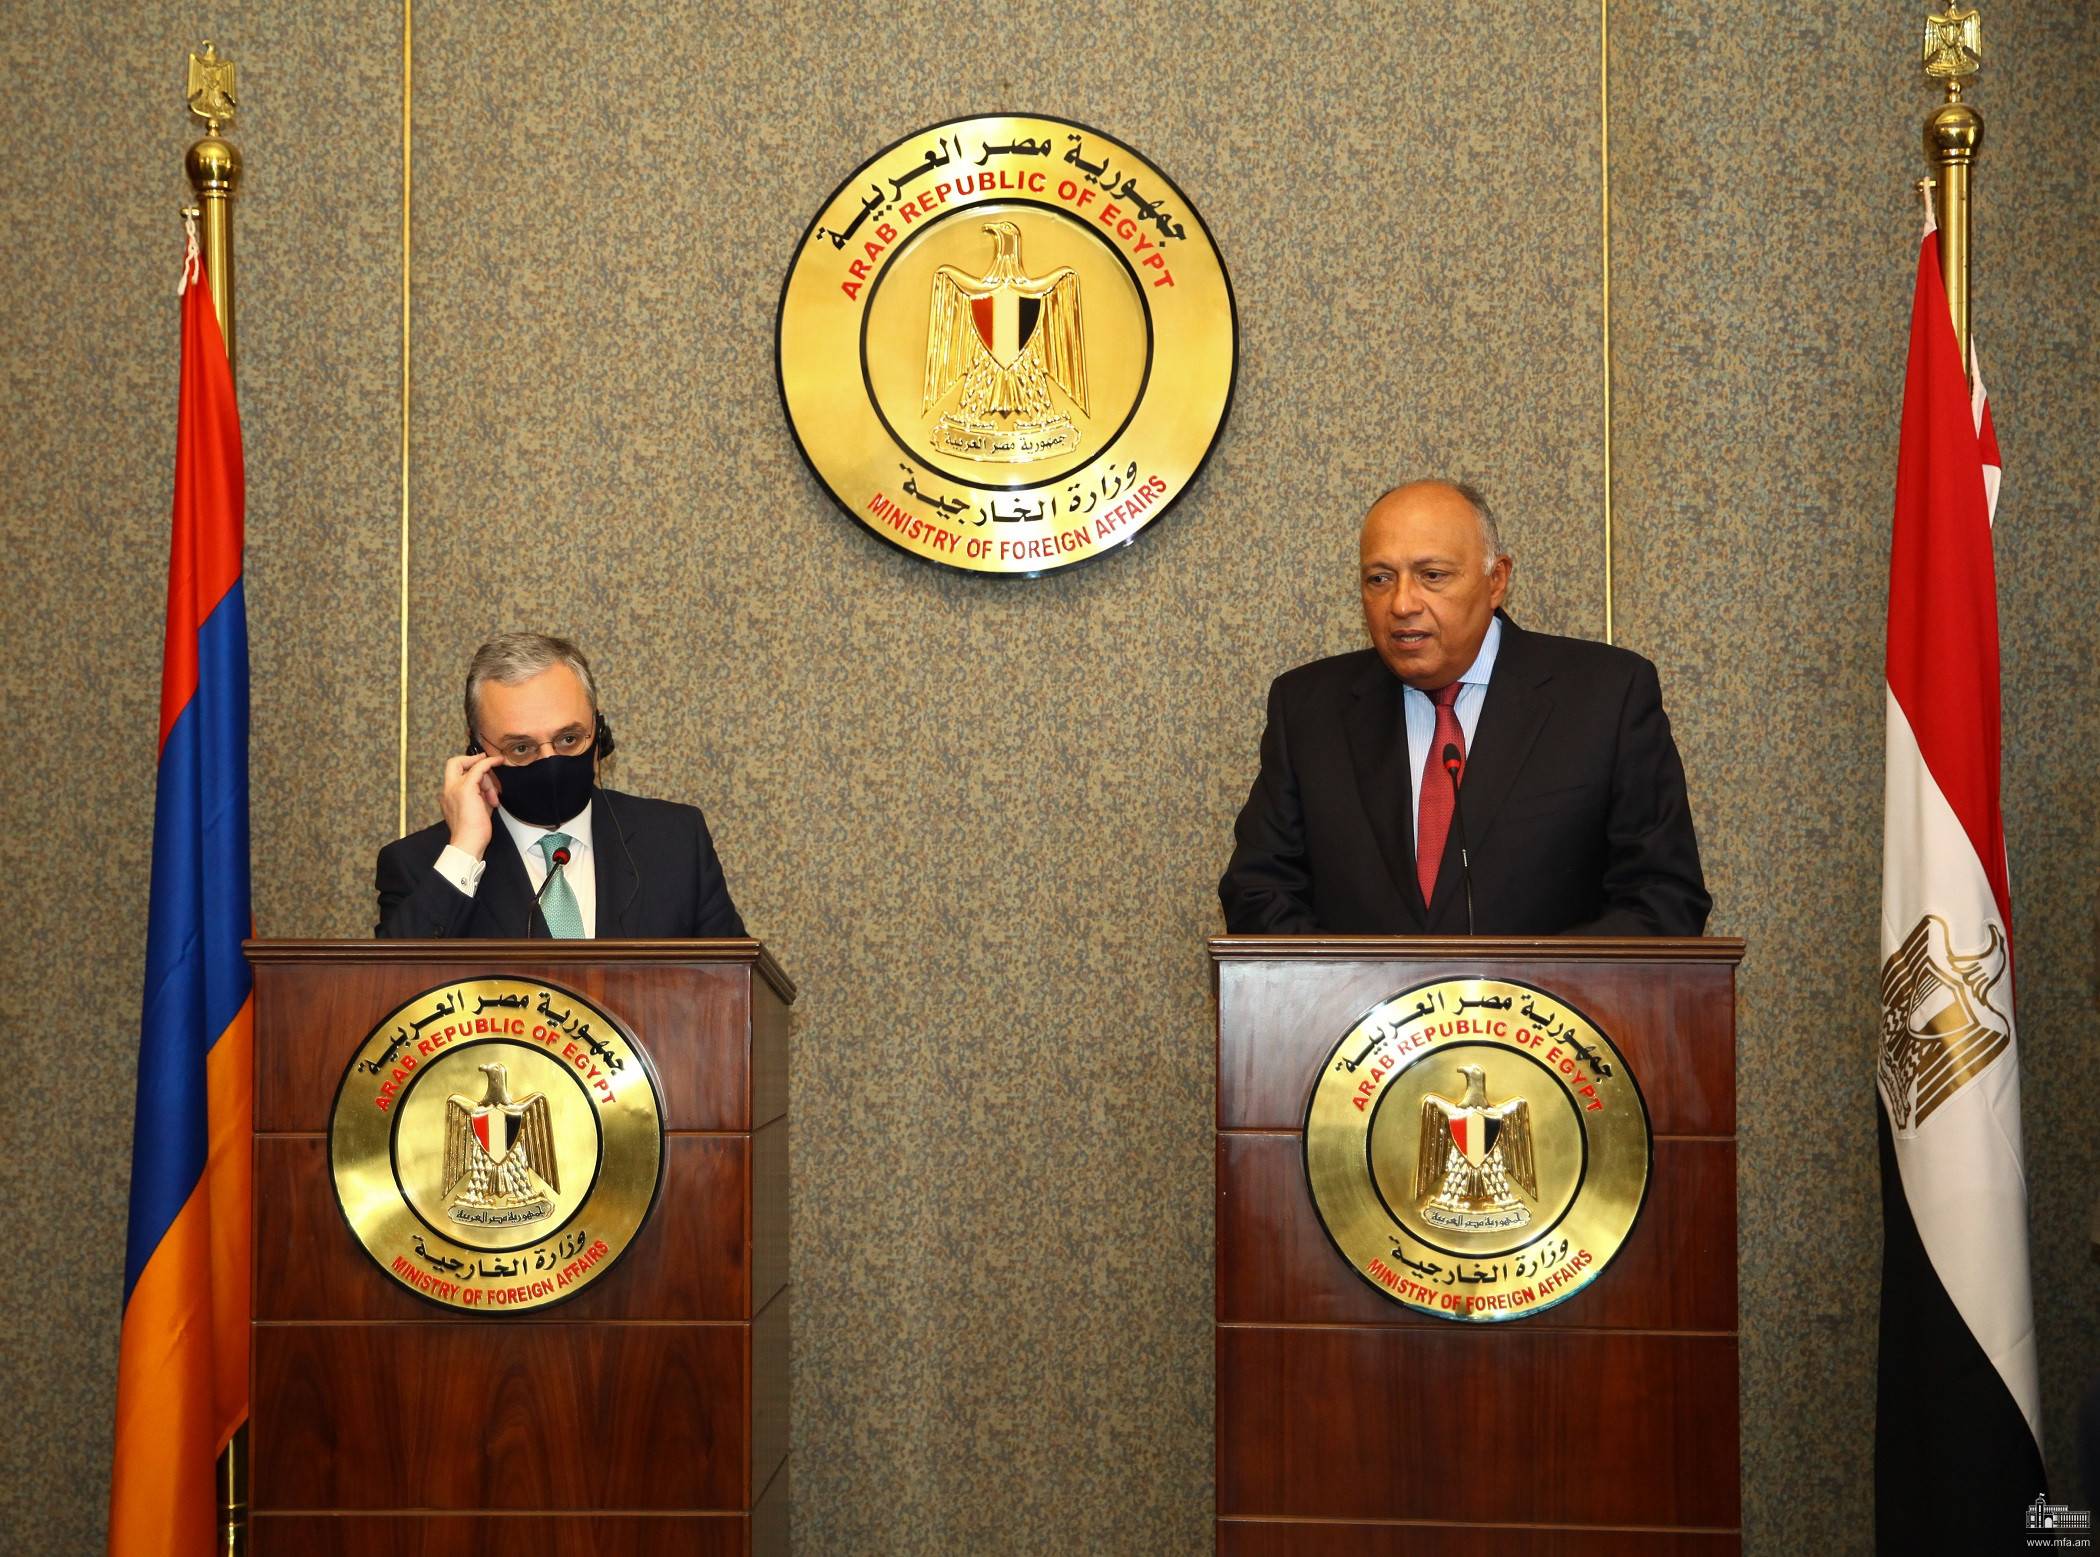 Глава МИД Армении в Каире: действия Турции подрывают усилия по достижению мира и стабильности в регионе